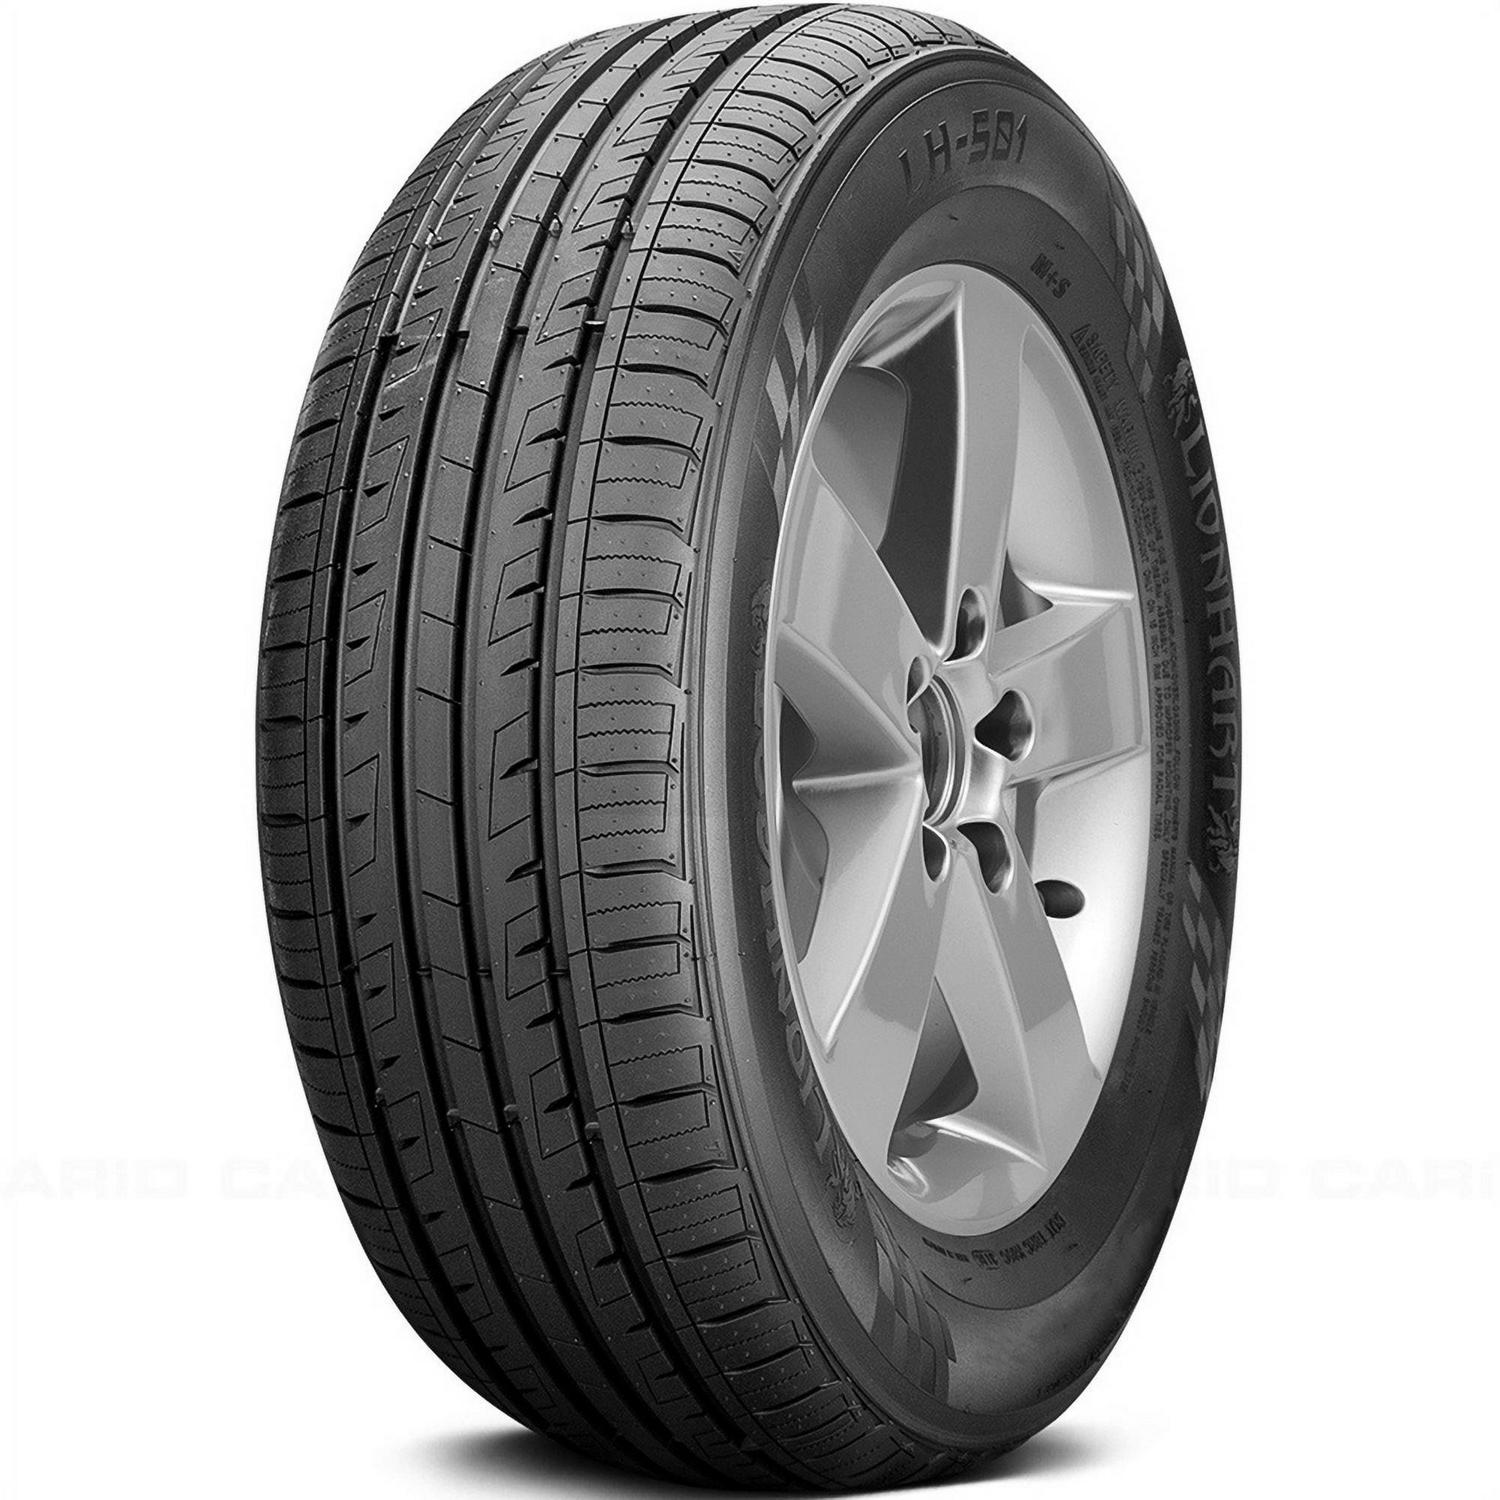 Lionhart LH-501 205/45R16 ZR 87W XL A/S Performance Tire